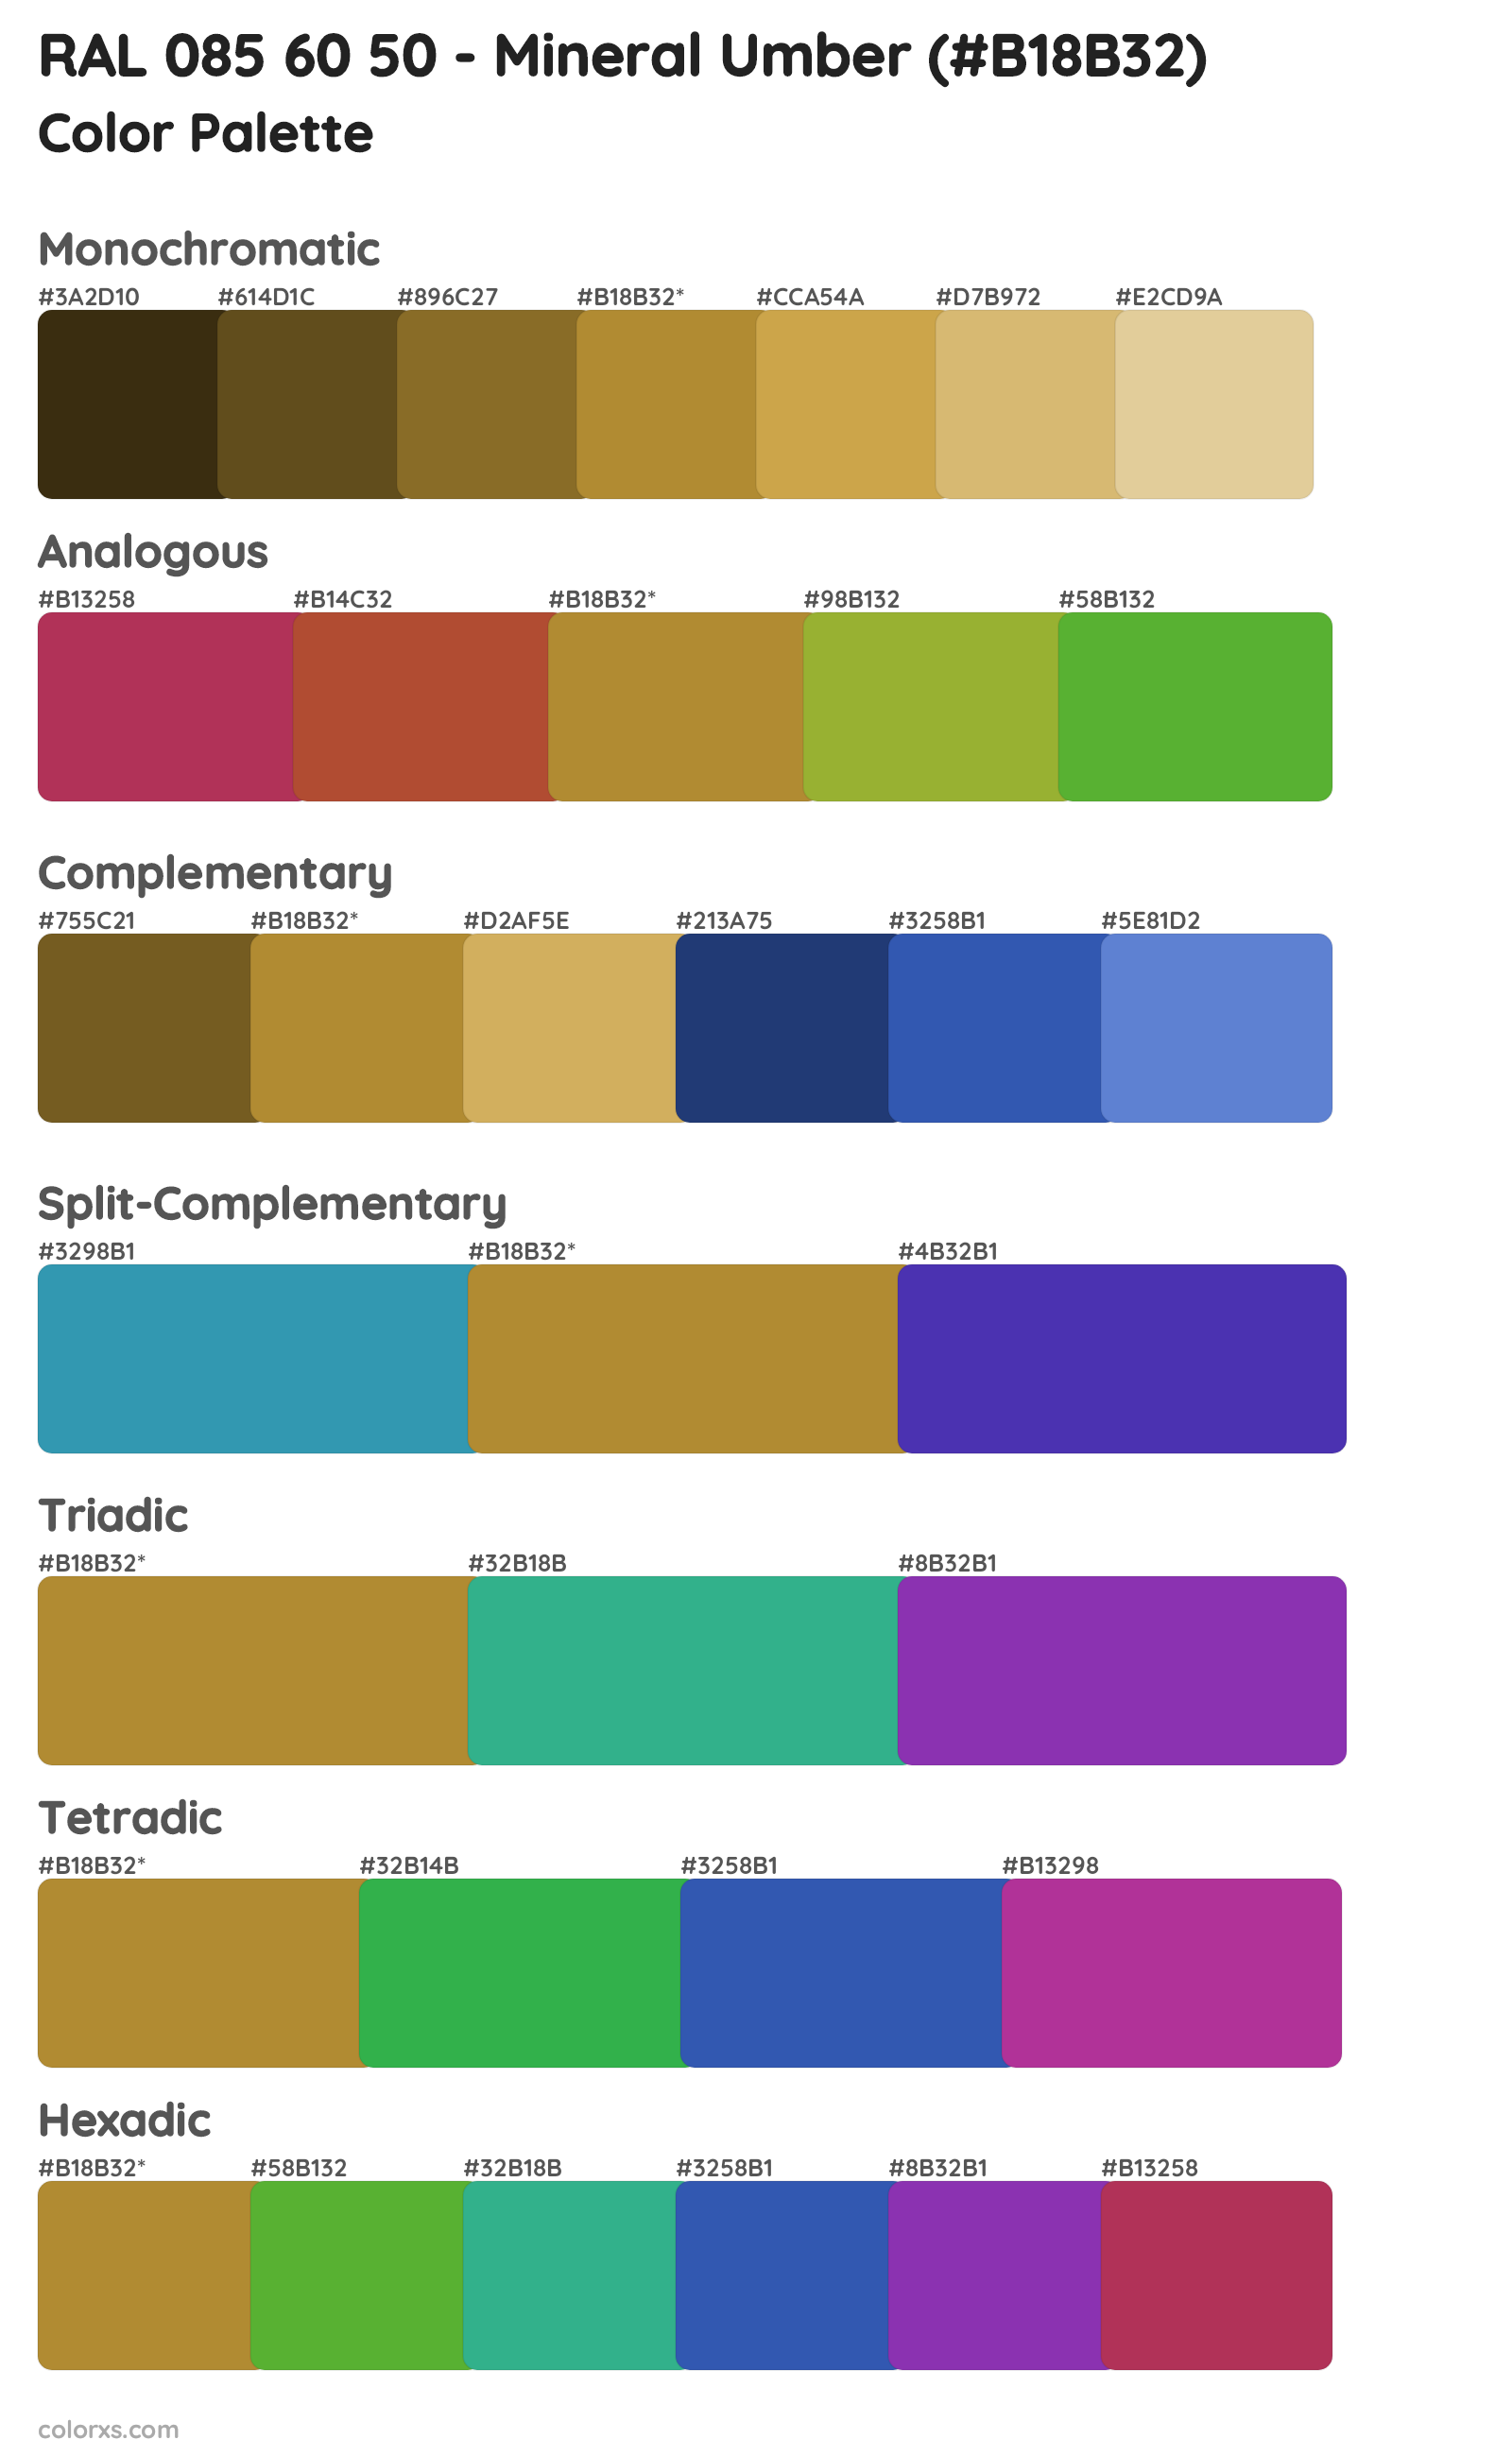 RAL 085 60 50 - Mineral Umber Color Scheme Palettes